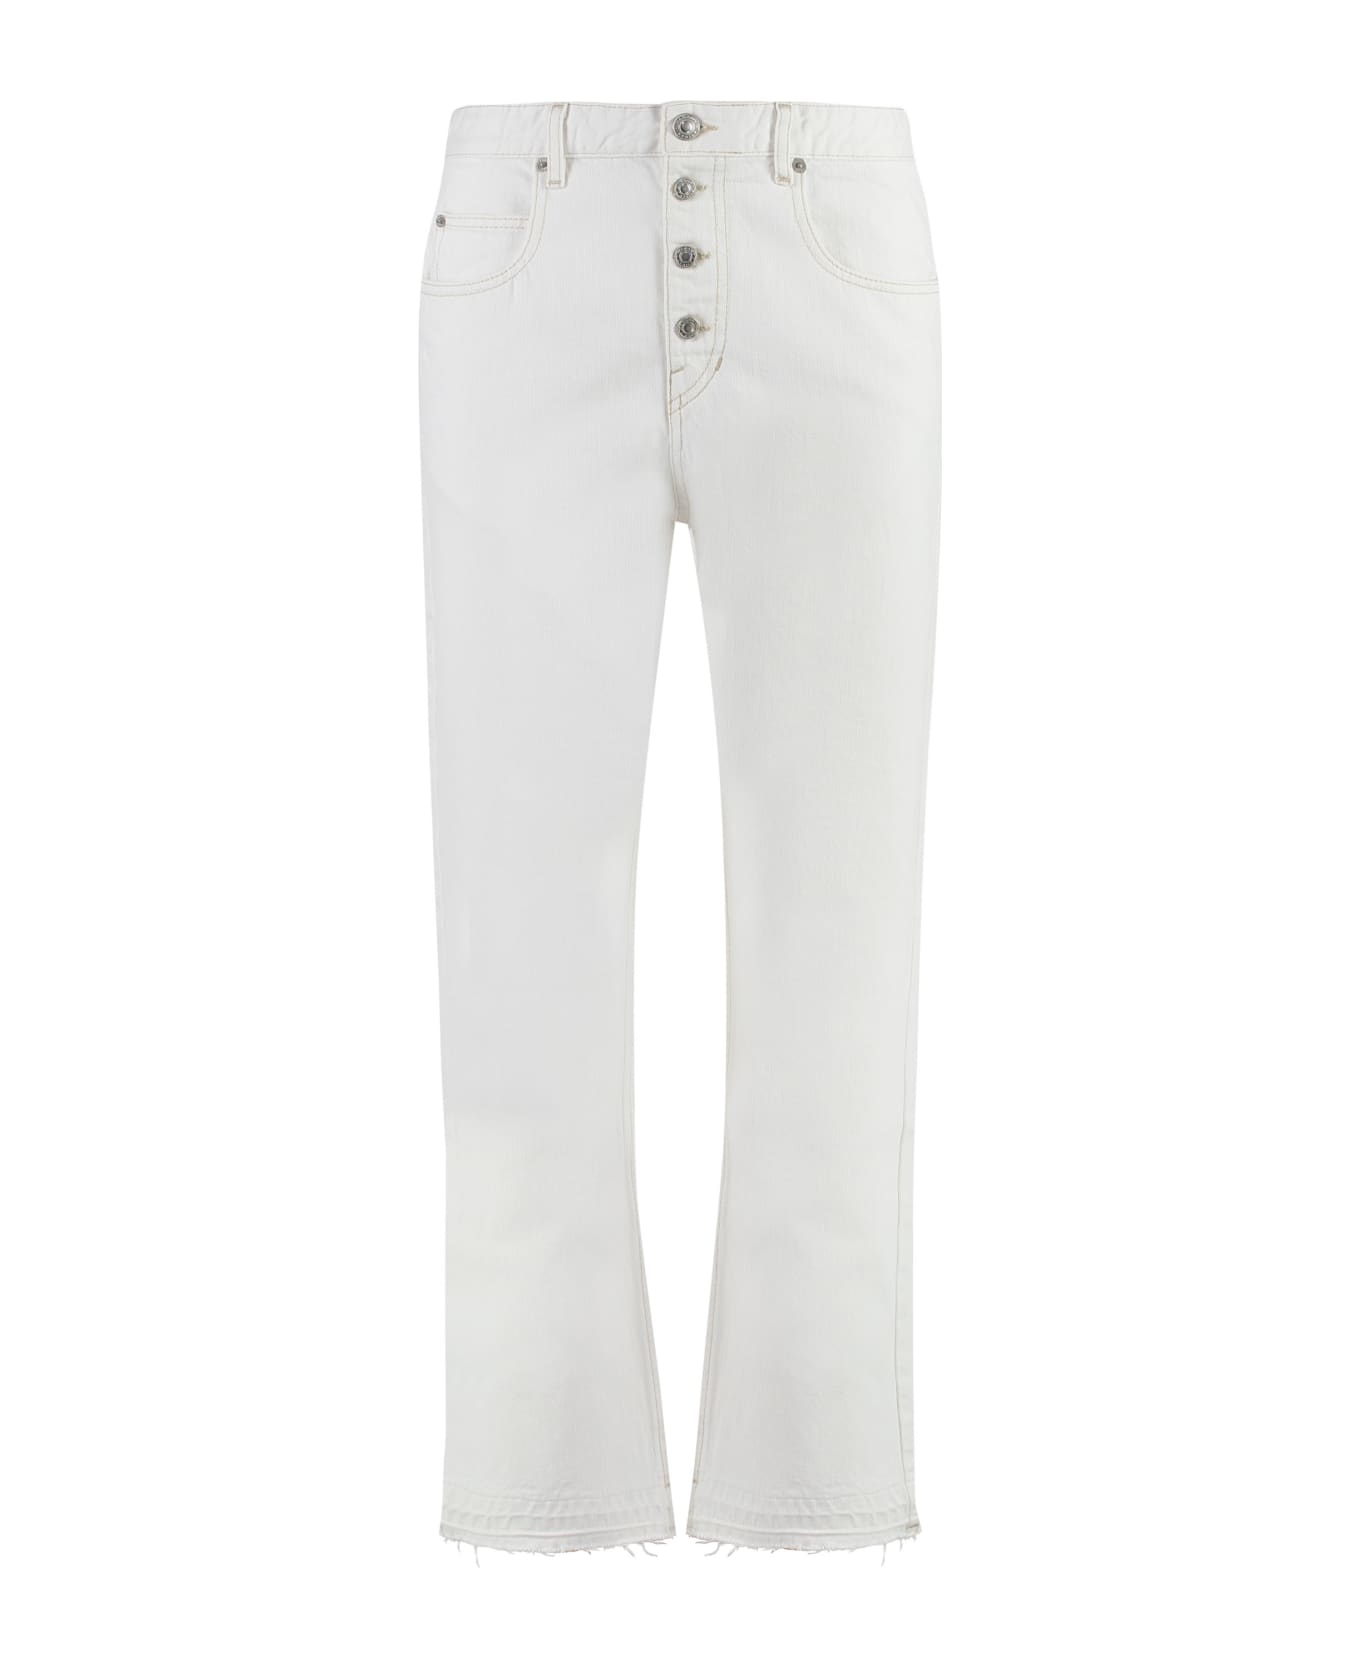 Marant Étoile Belden Straight-leg Jeans - White デニム